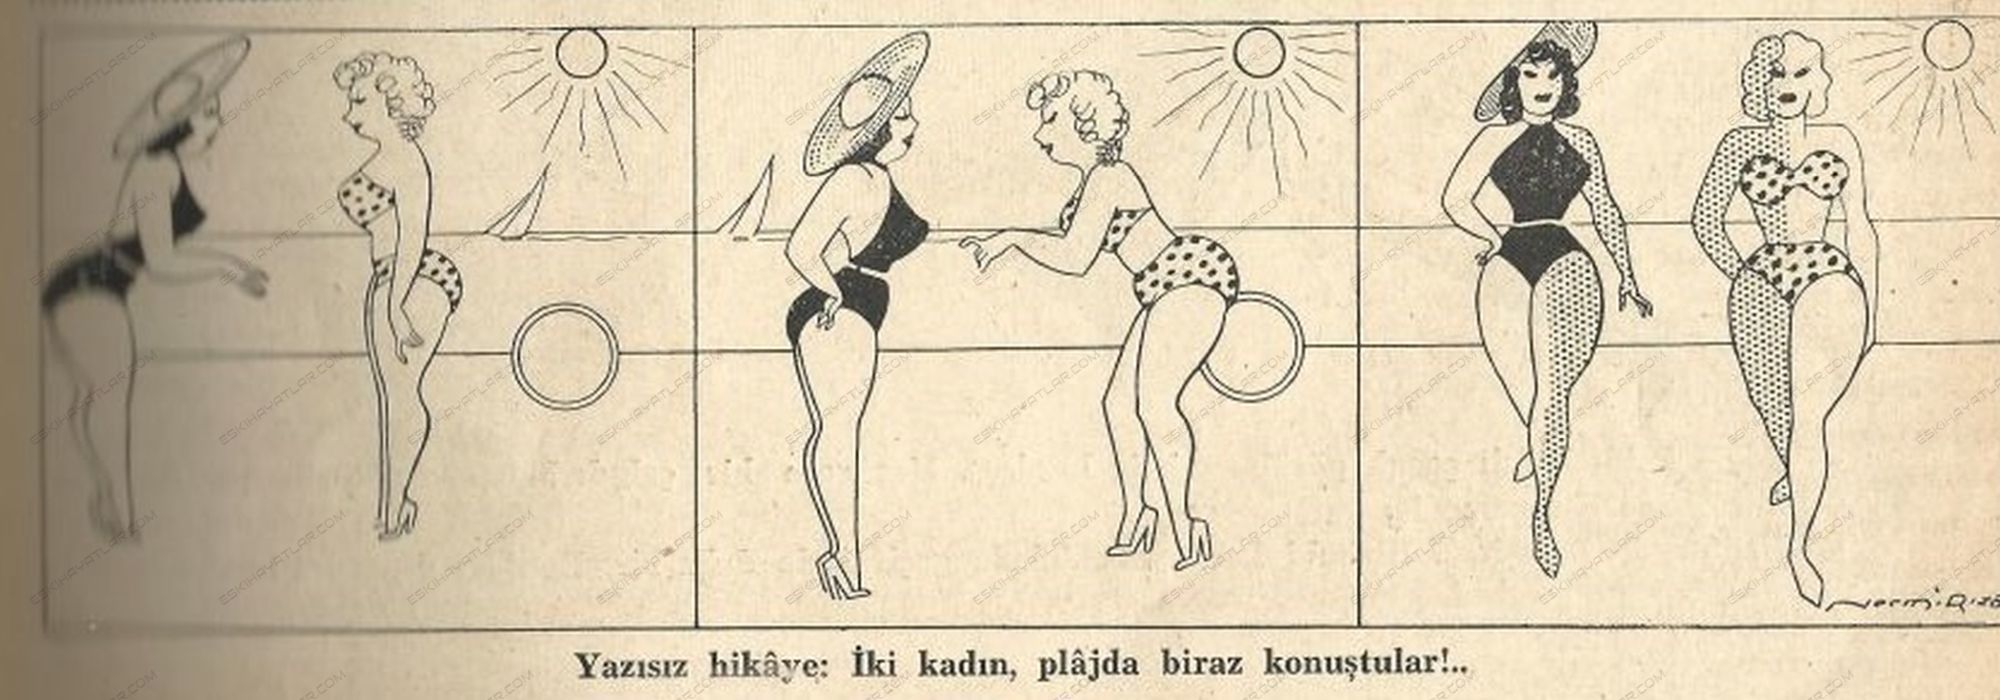 0225-akbaba-dergisi-1938-necmi-riza-karikaturleri-otuzlarda-denize-girmek-mayolu-kadinlar